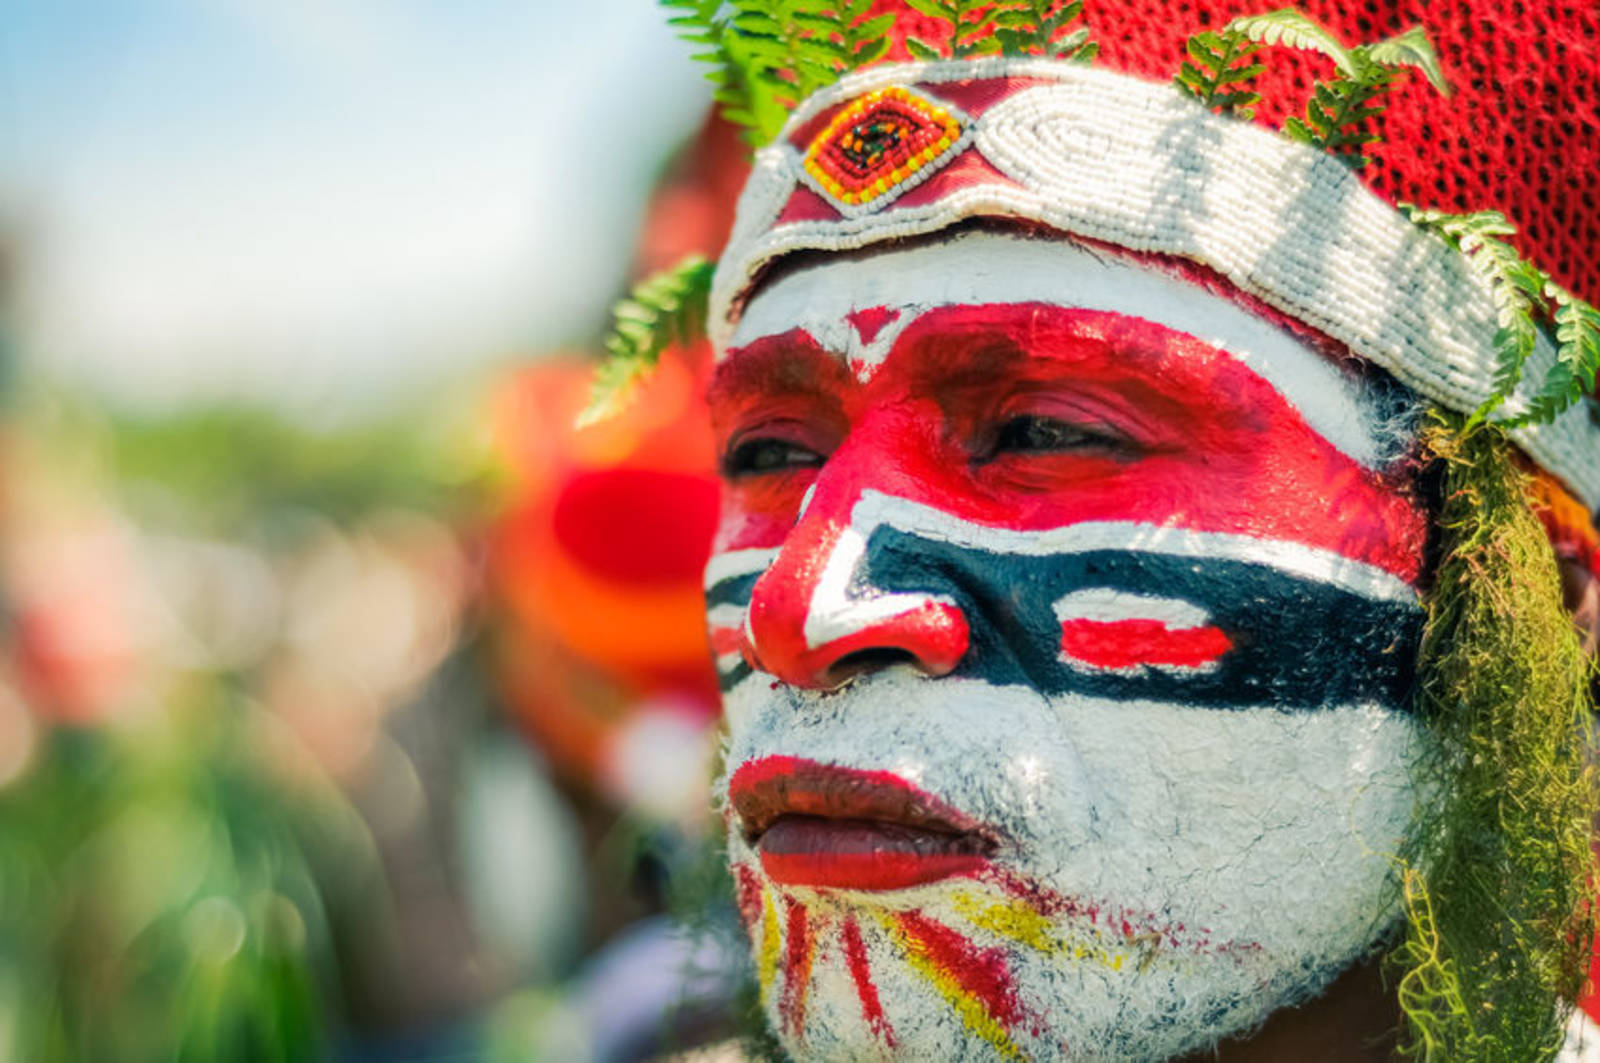 巴布新幾內亞--土著族群多且特別